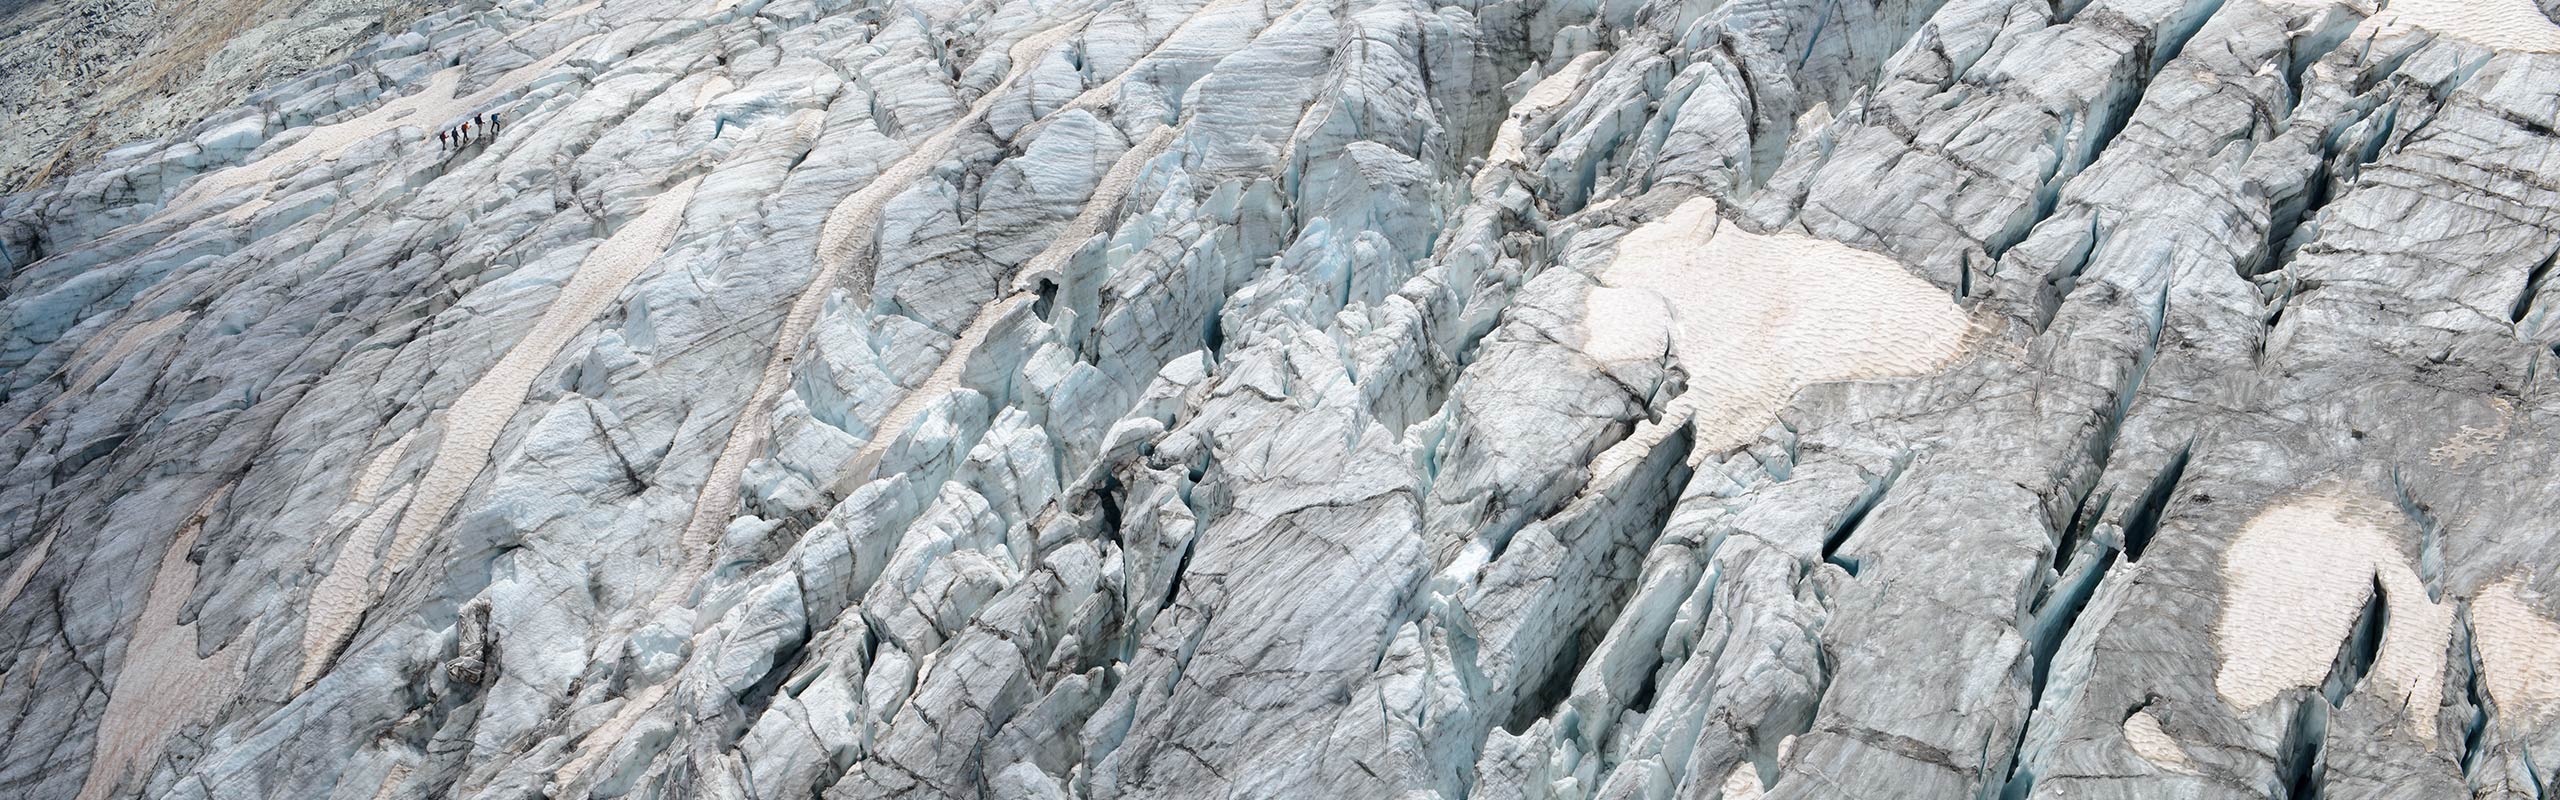 Saas Fee Glacier